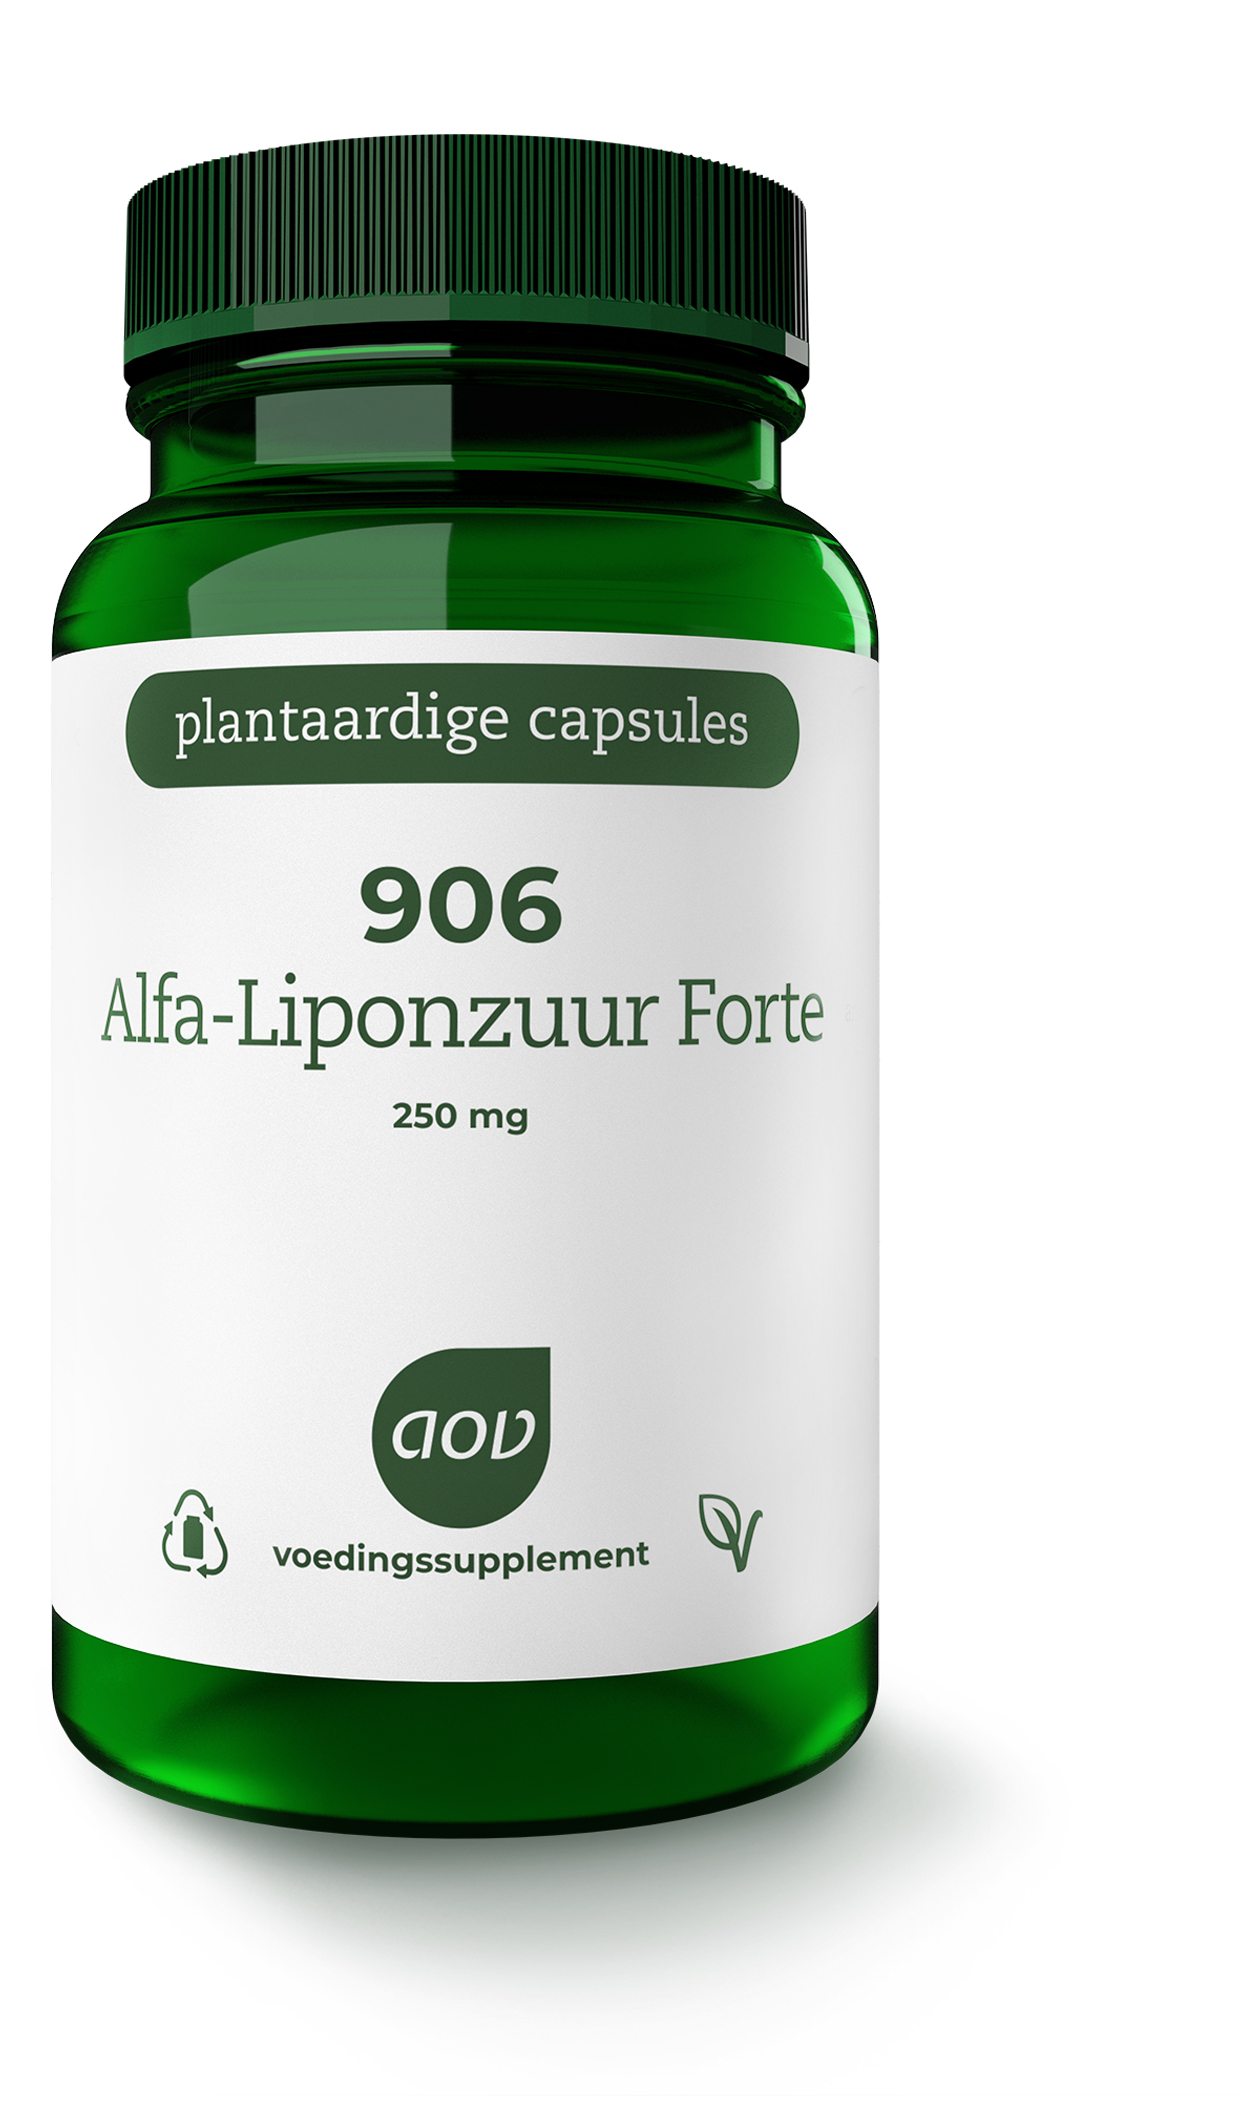 Alfa-liponzuur Forte (250 mg) 906 - 60 gél vég °